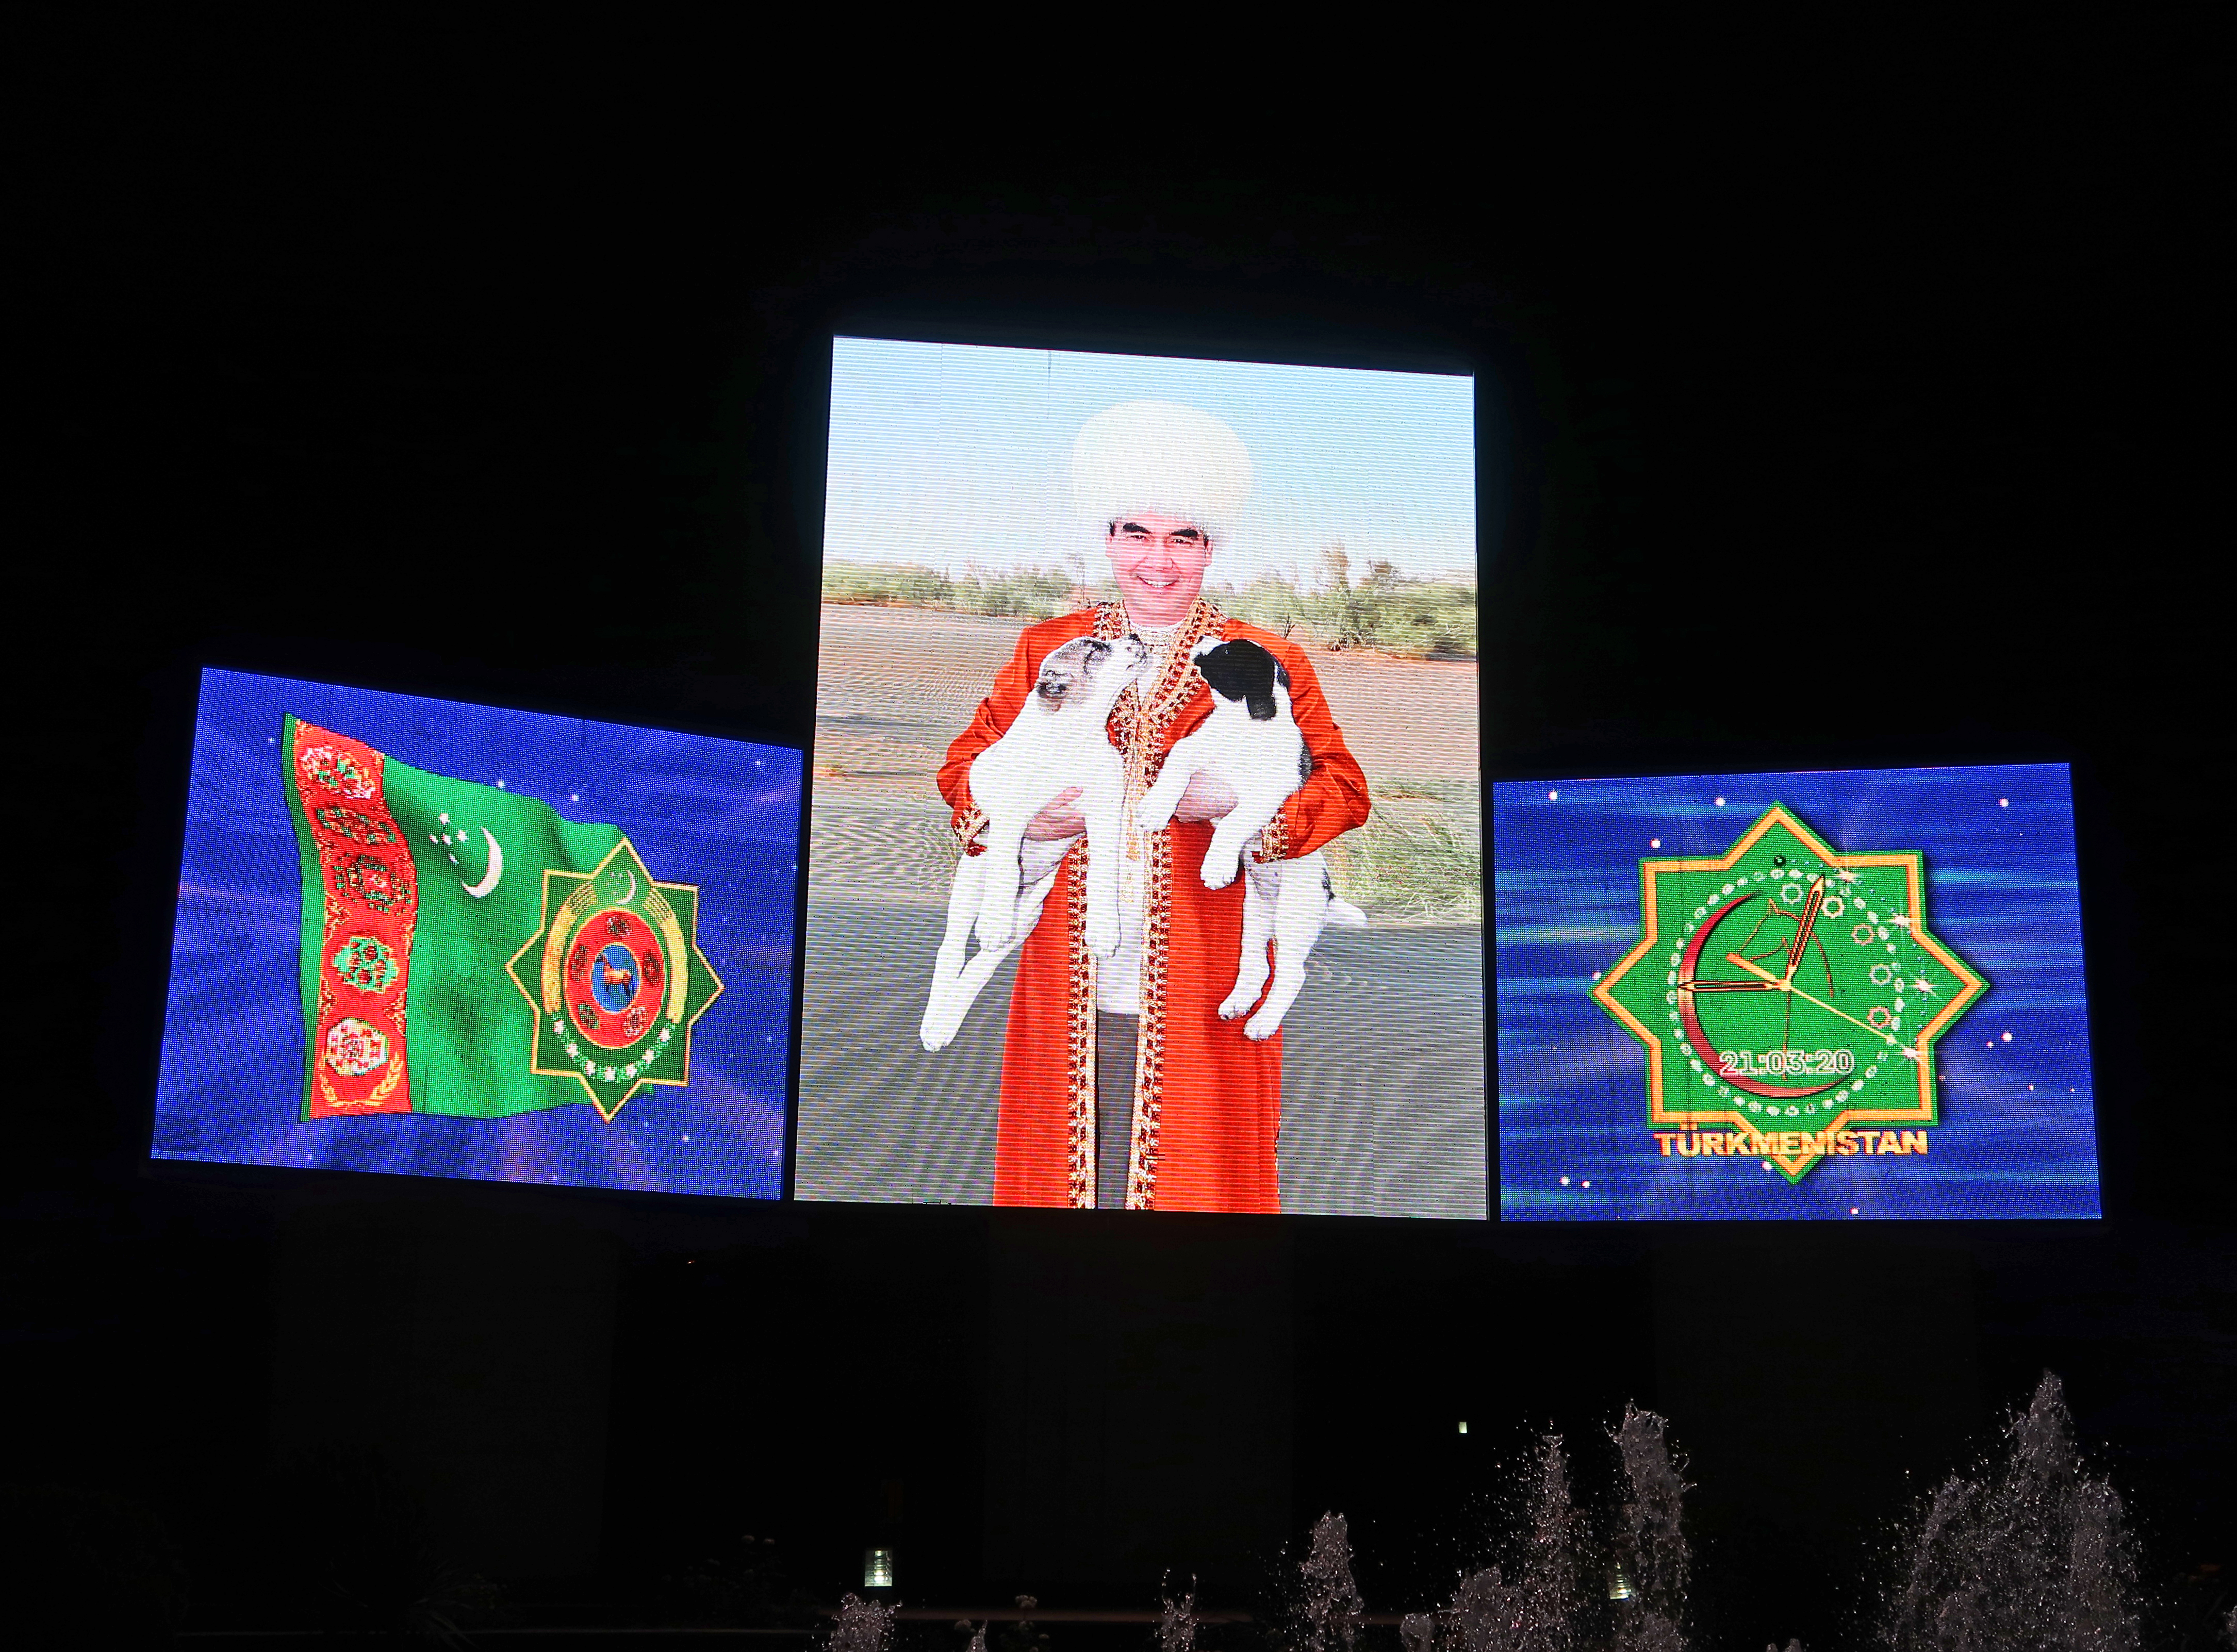 Billboard of President Gurbanguly Berdymukhamedov of Turkmenistan (photo credit: John Pavelka/flickr)